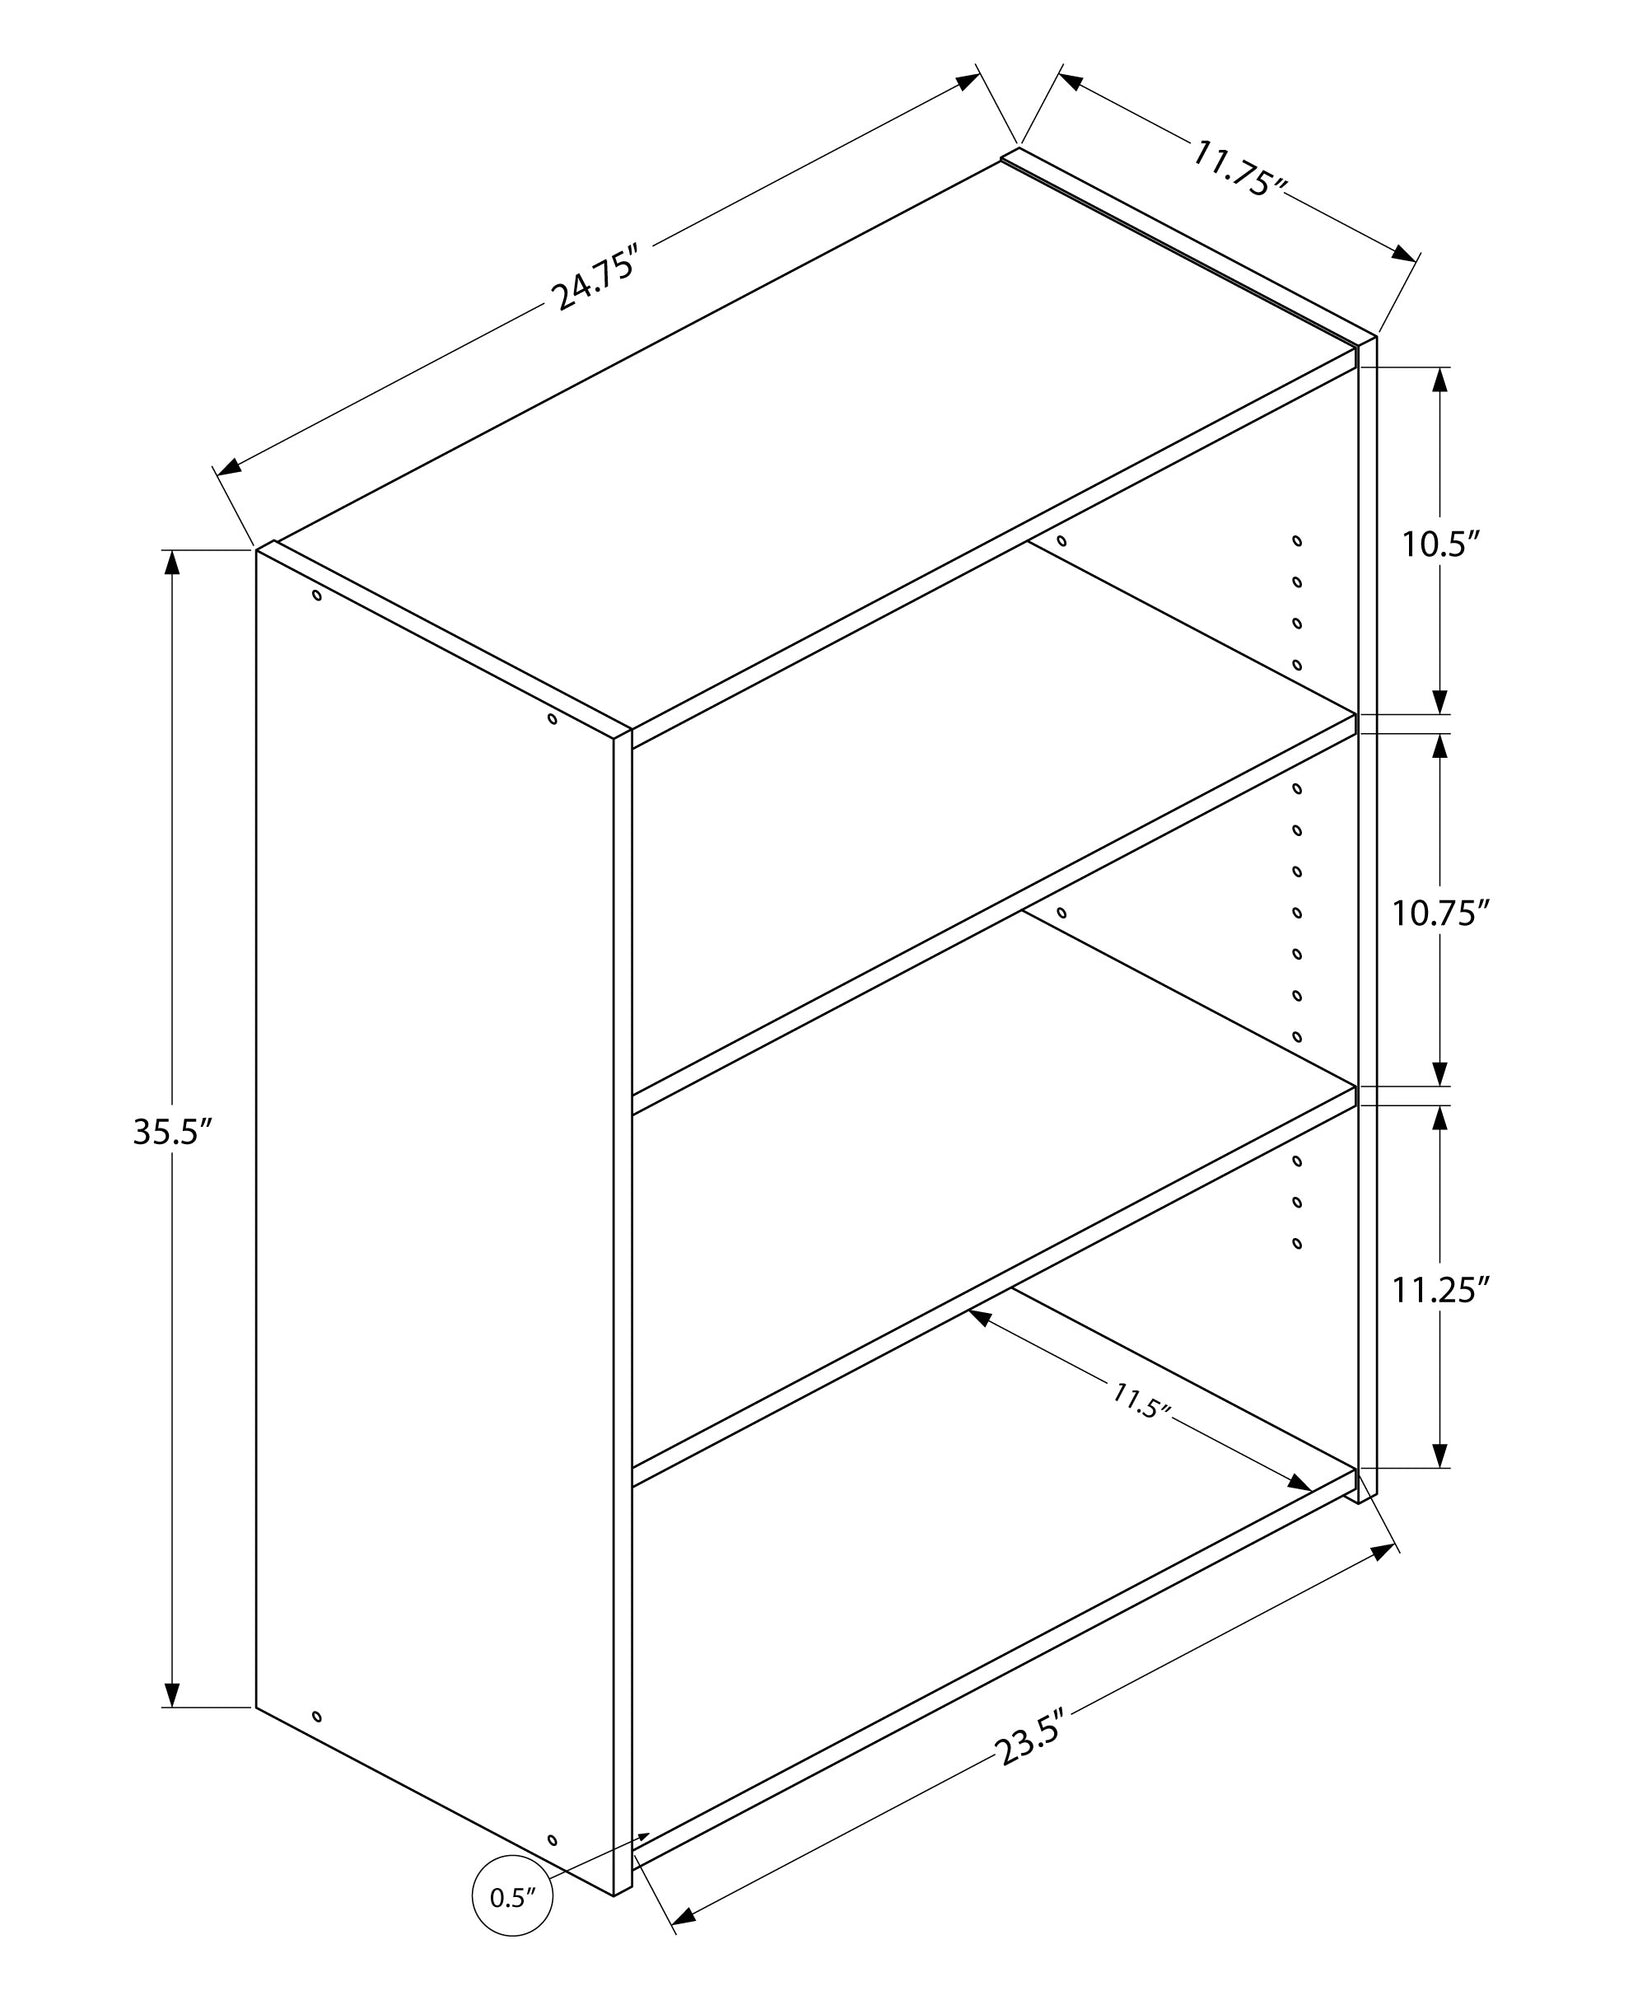 36" White Wood Adjustable Bookcase